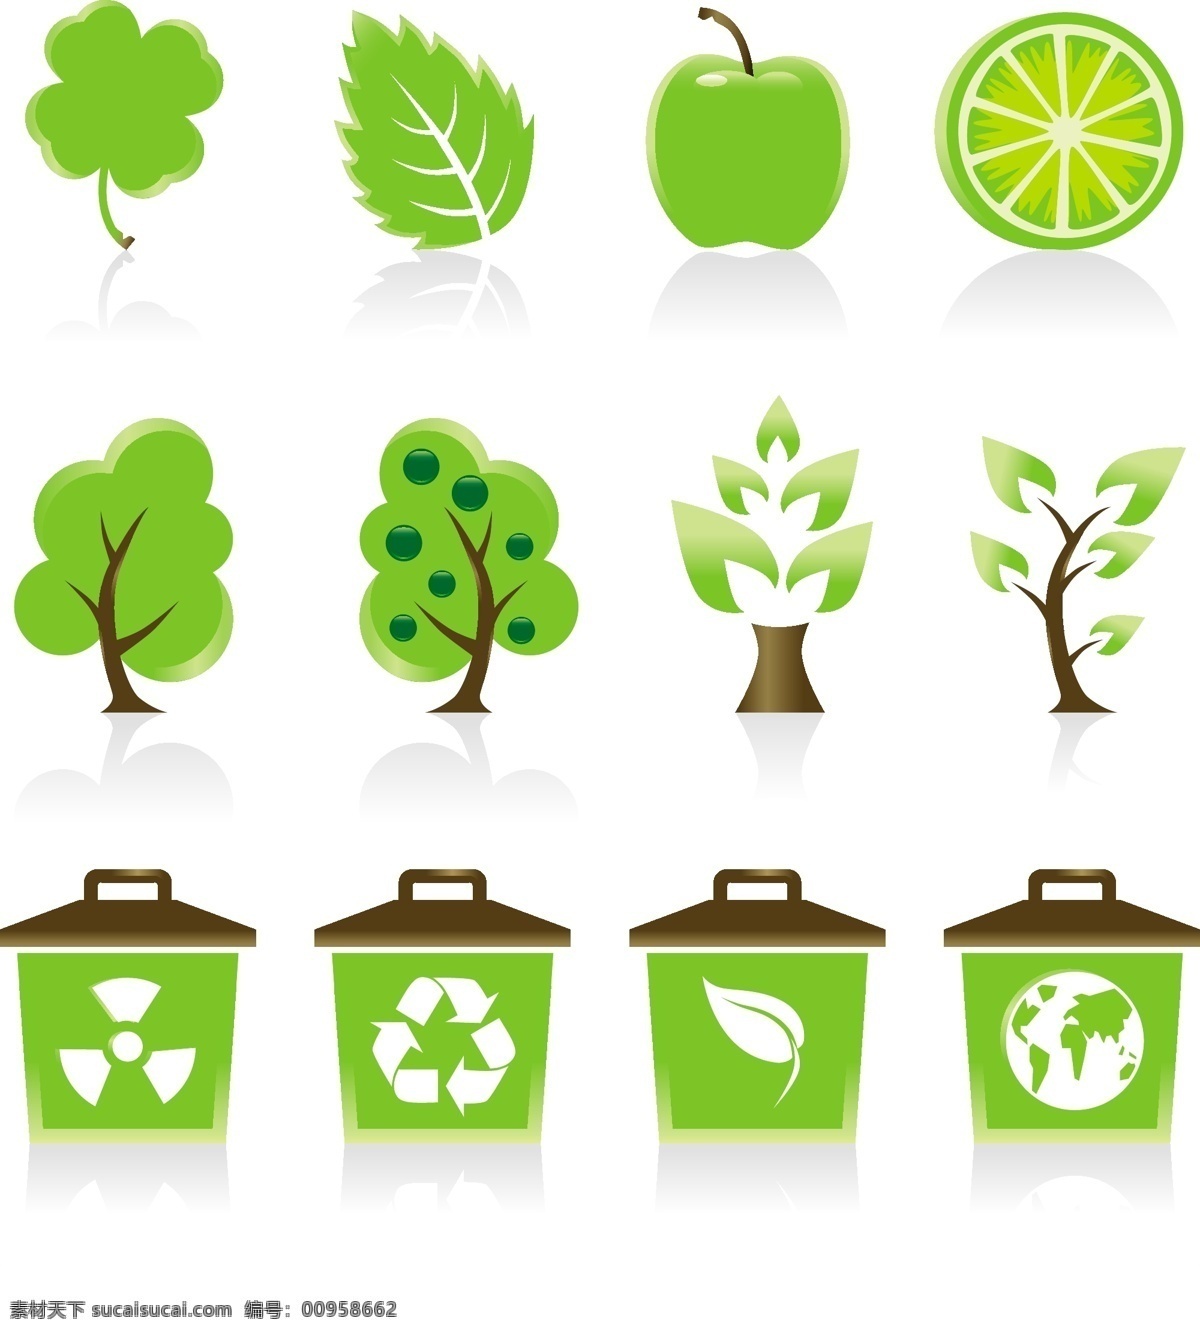 绿色免费下载 环保 垃圾桶 绿色 树 循环使用 矢量图